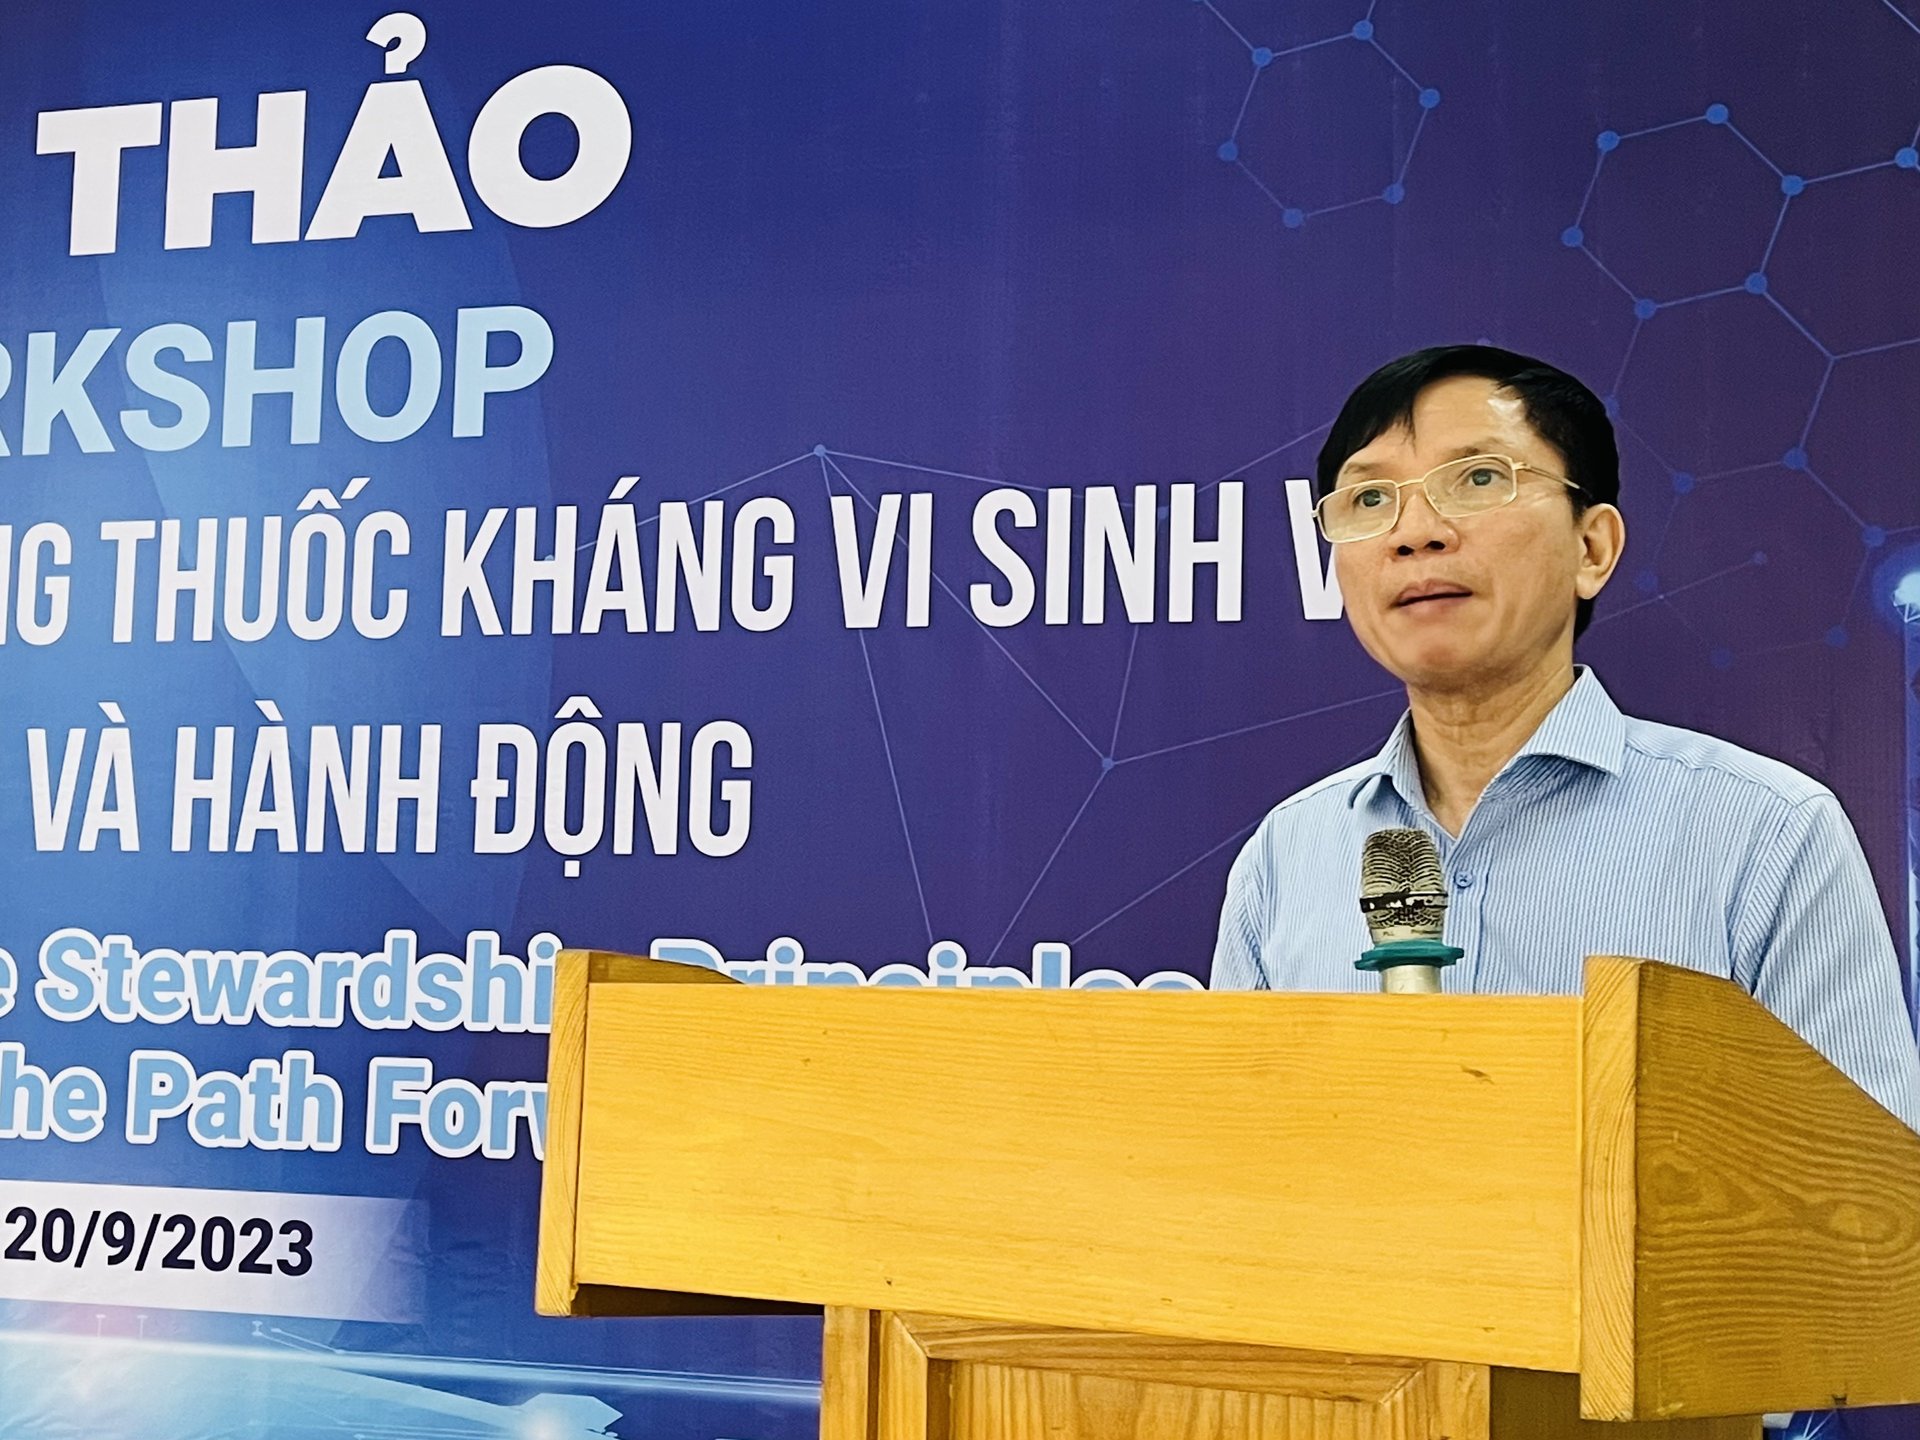 Ông Nguyễn Thanh Sơn, Chủ tịch VIPA cho biết, việc lạm dụng kháng sinh trong chăn nuôi dẫn tới hiện tượng kháng kháng sinh đã, đang và sẽ đe dọa sức khỏe, sự phát triển toàn cầu. Ảnh: Hồng Thắm.